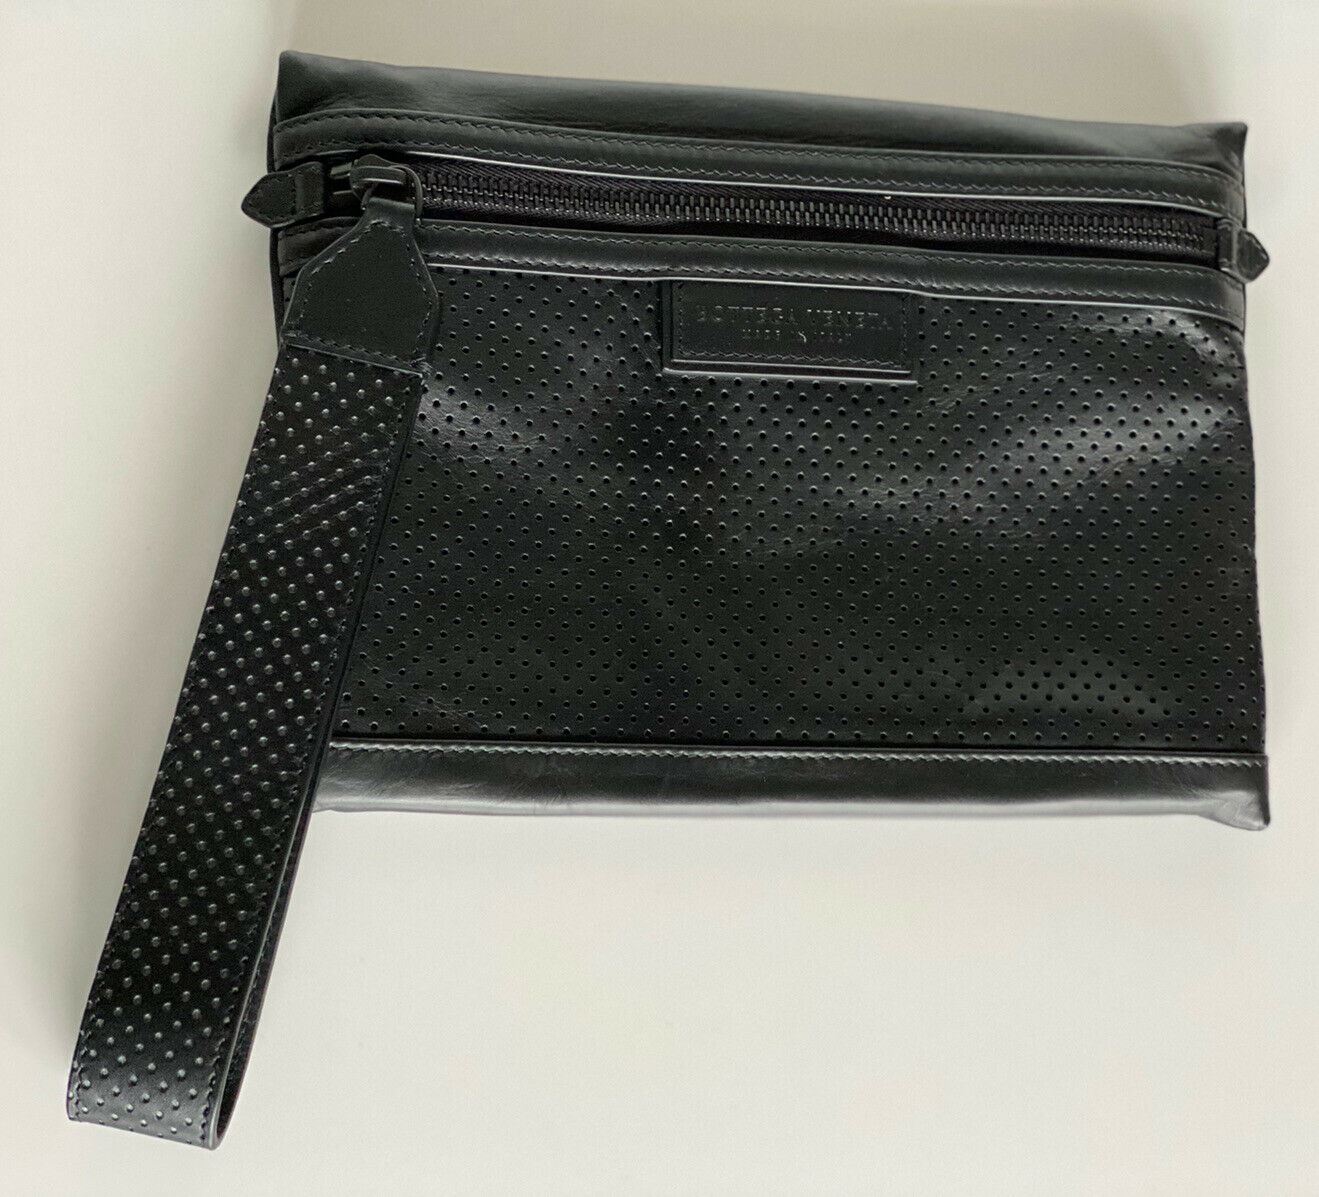 NWT $670 Bottega Veneta Leggero Perforated Leather Wristlet Wallet Black 566199